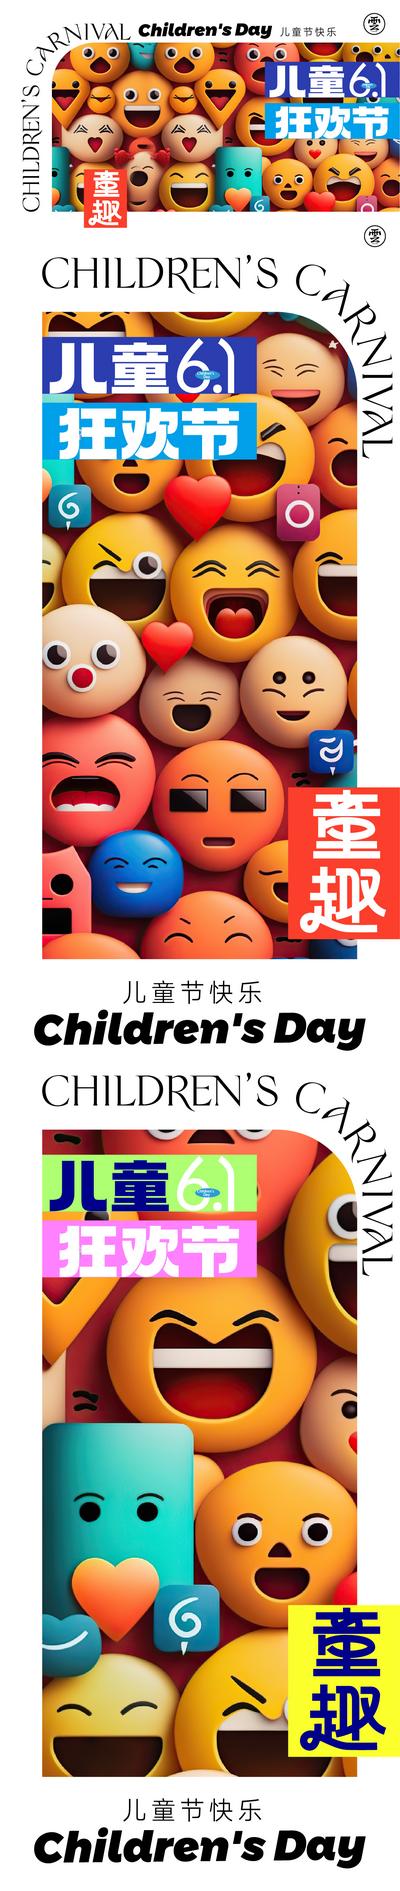 南门网 海报 公历节日 房地产 儿童节 61 c4d 笑脸 表情包 童趣 狂欢 趣味 系列